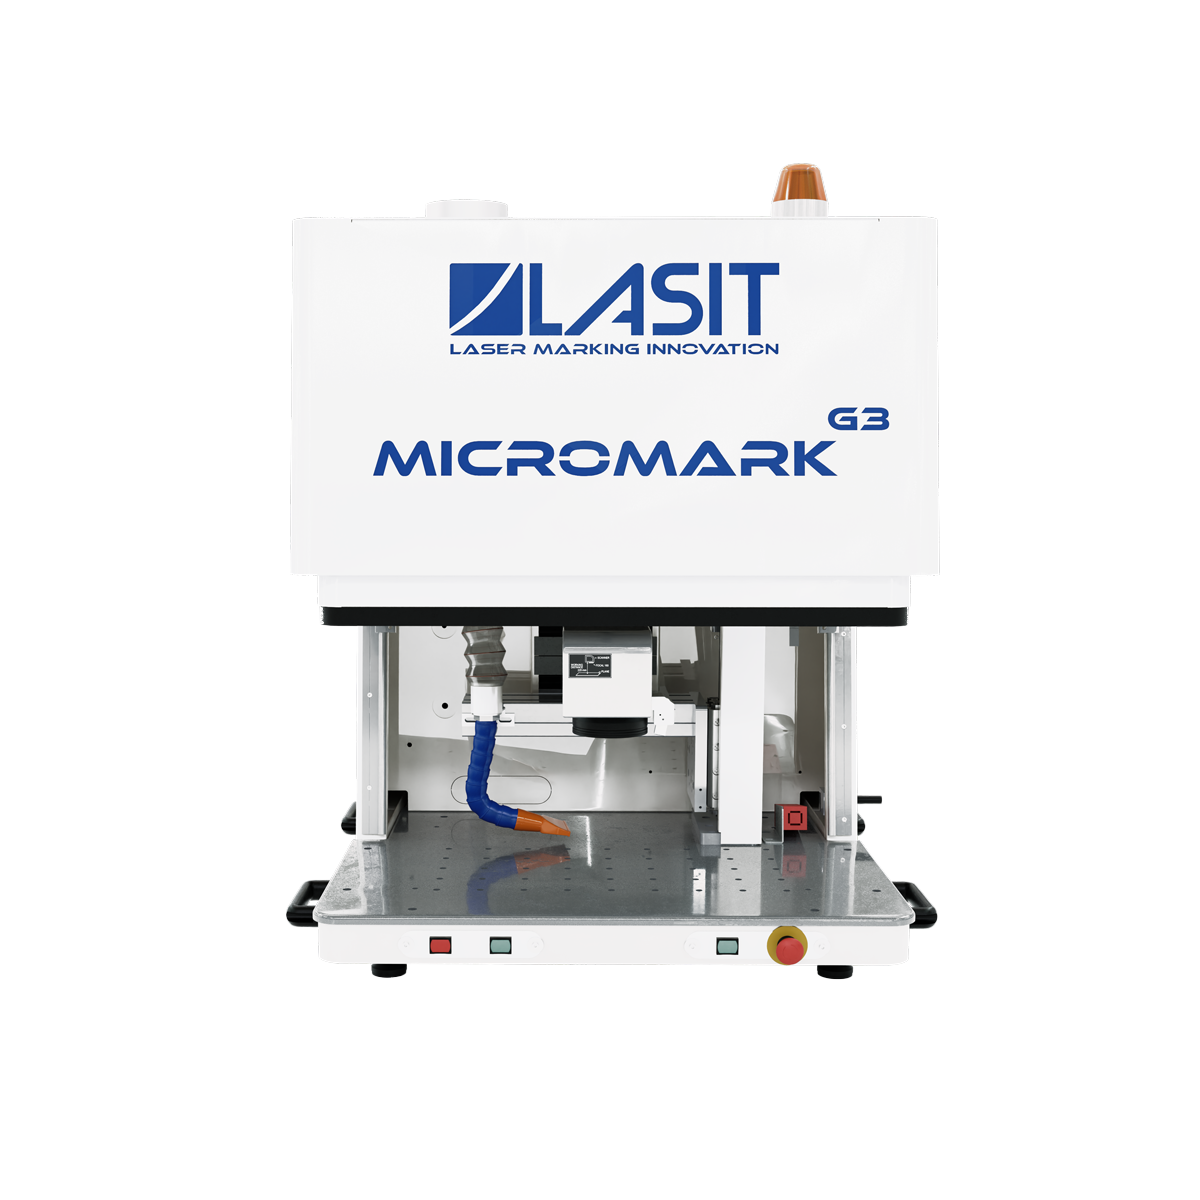 Micromark_web-02 LASIT risponde alle 10 domande più comuni sulla Marcatura laser